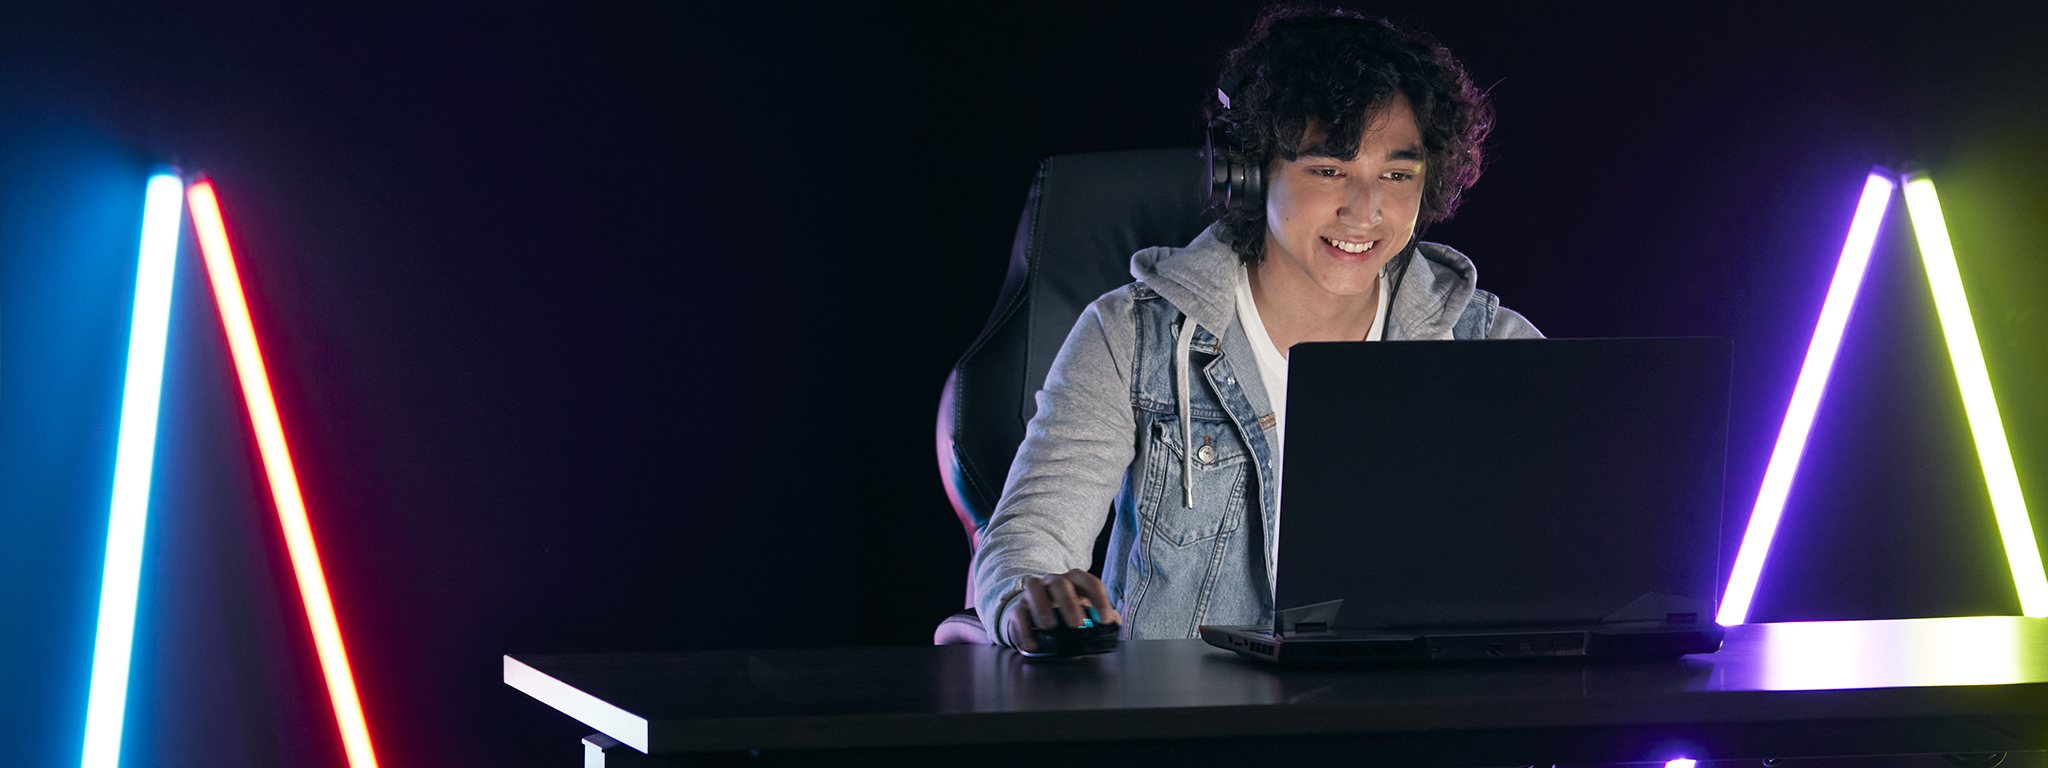 Immagine di un giovane gamer mentre gioca con il suo laptop in una stanza buia